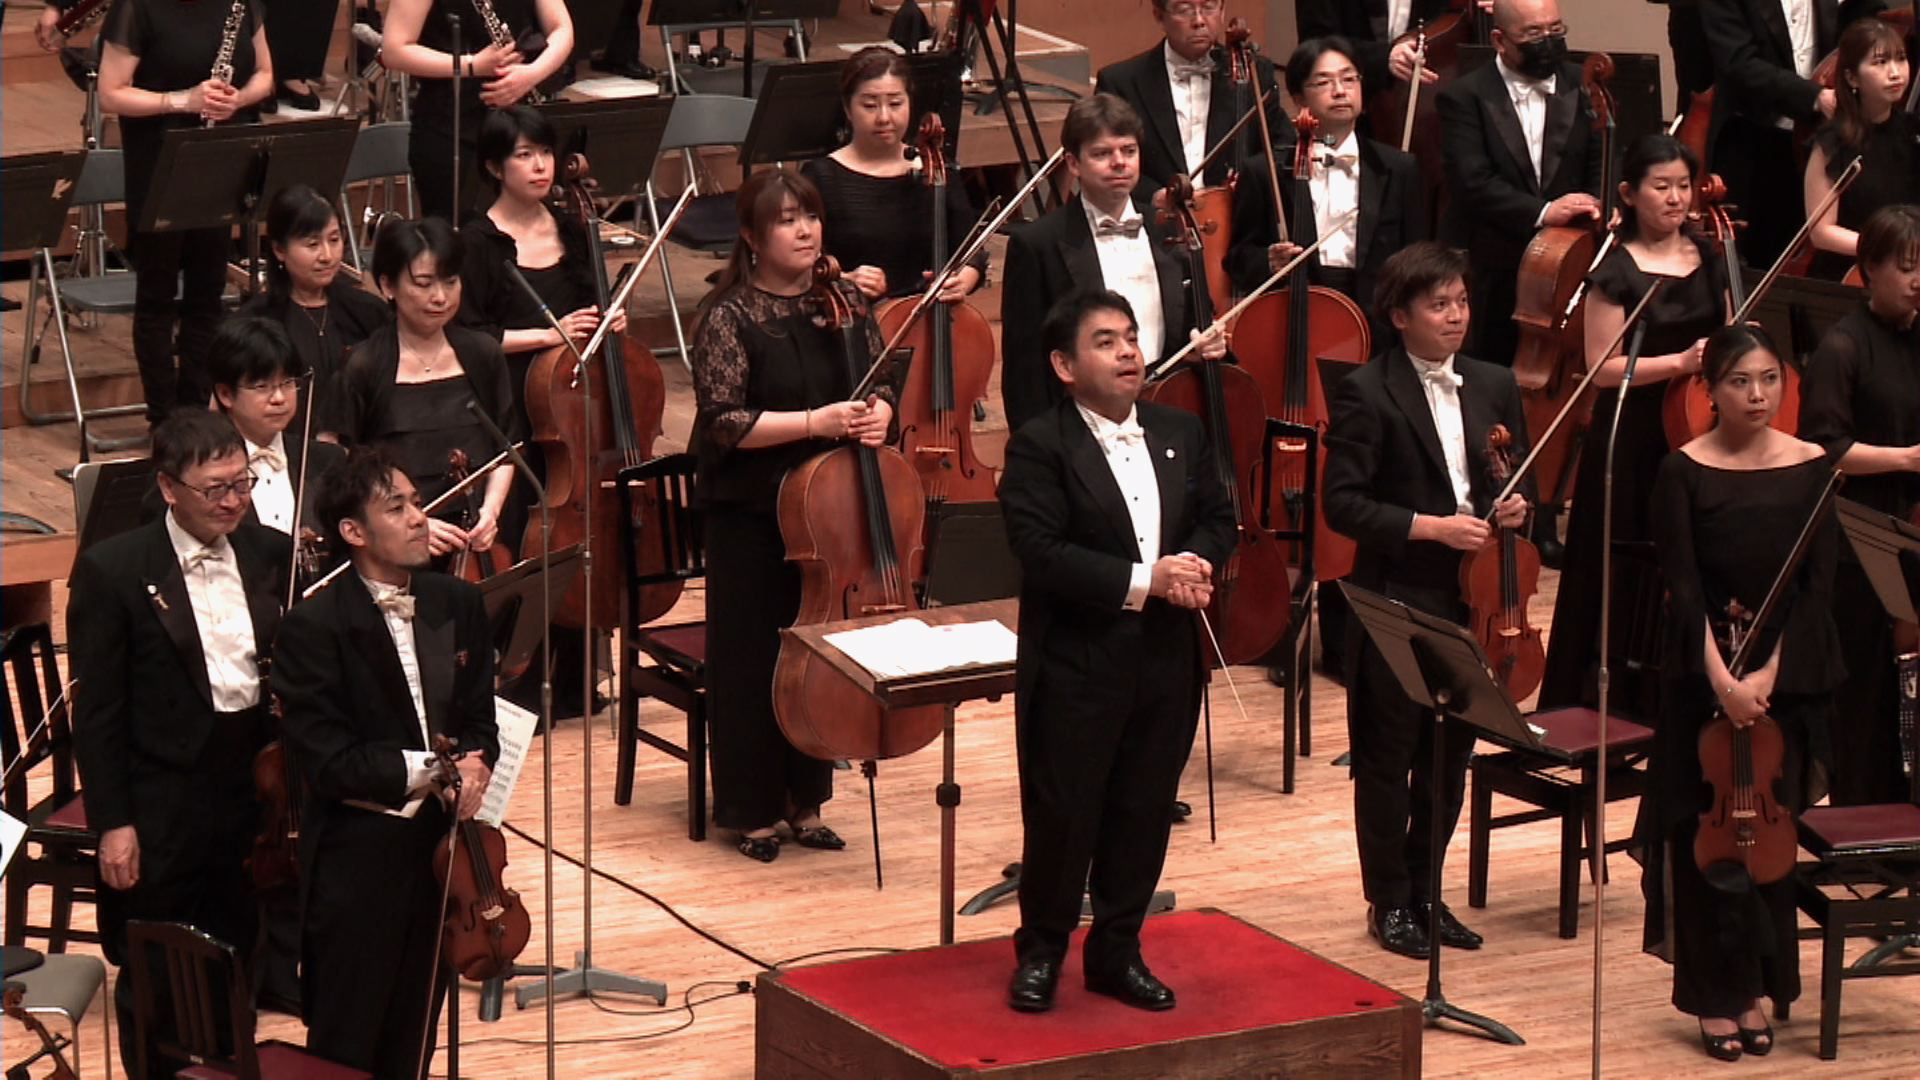 2021「平和の夕べ」コンサート（無観客）
指揮：下野竜也　
広島交響楽団
ゼレンカ（下野竜也編曲）：「ミゼレーレ」ハ短調より（管弦楽版）
ベートーヴェン：葬送行進曲（交響曲第3番「英雄」より第2楽章）
2021 An Evening of Peace Concert, HIROSHIMA 
Tatsuya Shimono, Conductor 
Hiroshima Symphony Orchestra
Jan Dismas Zelenka: Miserere
Ludwig van Beethoven: Symphony No. 3, 